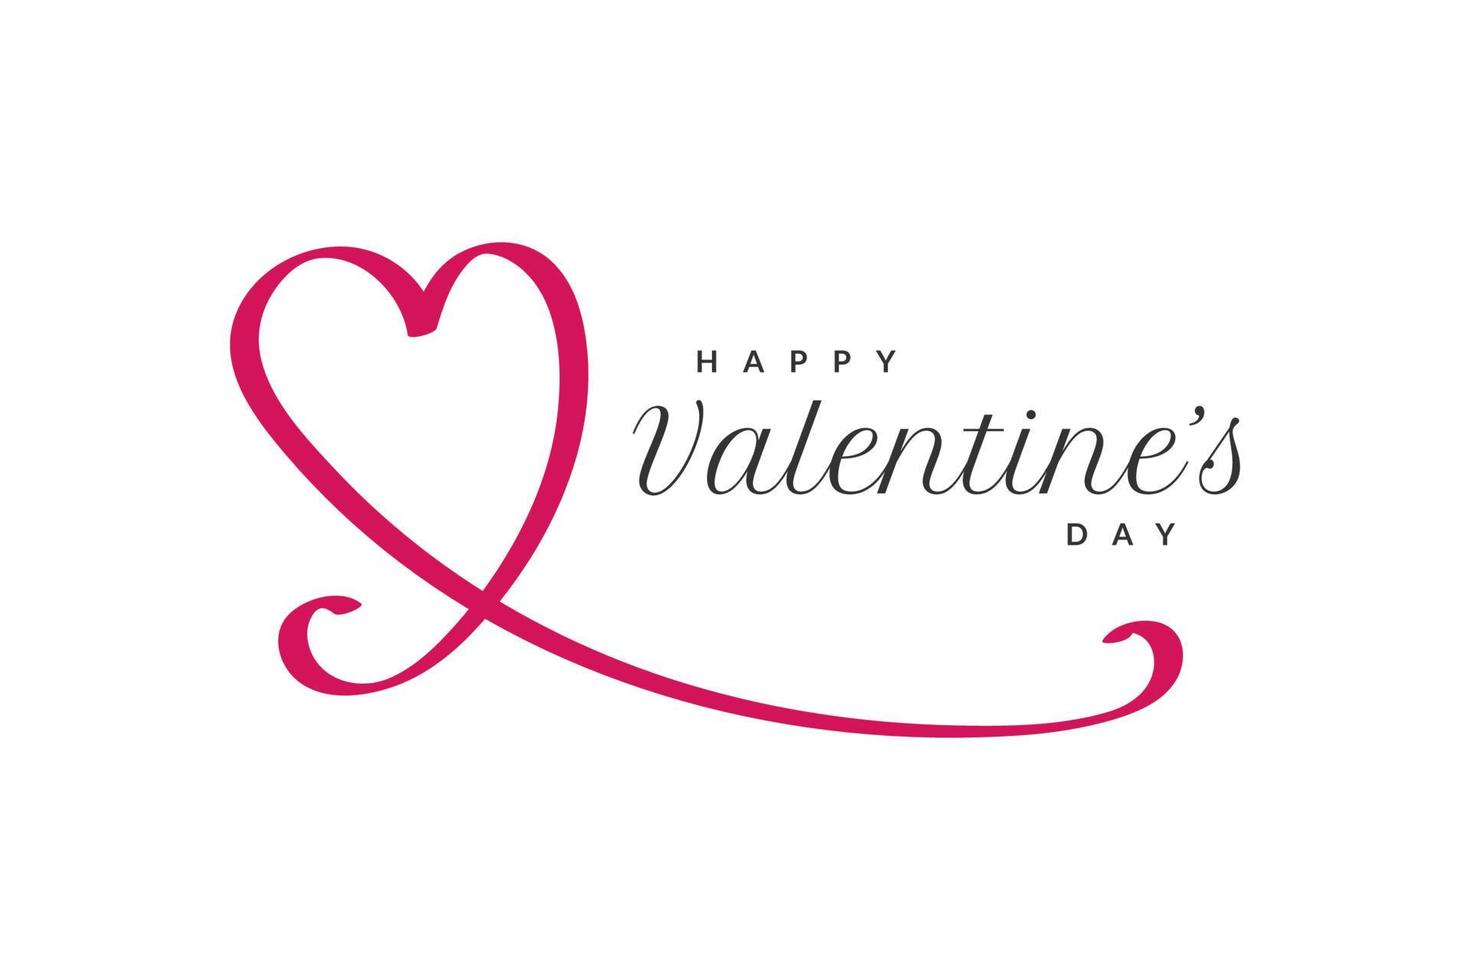 rood hart illustratie met happy Valentijnsdag belettering geïsoleerd op een witte achtergrond. Valentijnsdag achtergrond voor behang, flyers, uitnodiging, posters, brochure, banner of briefkaart vector